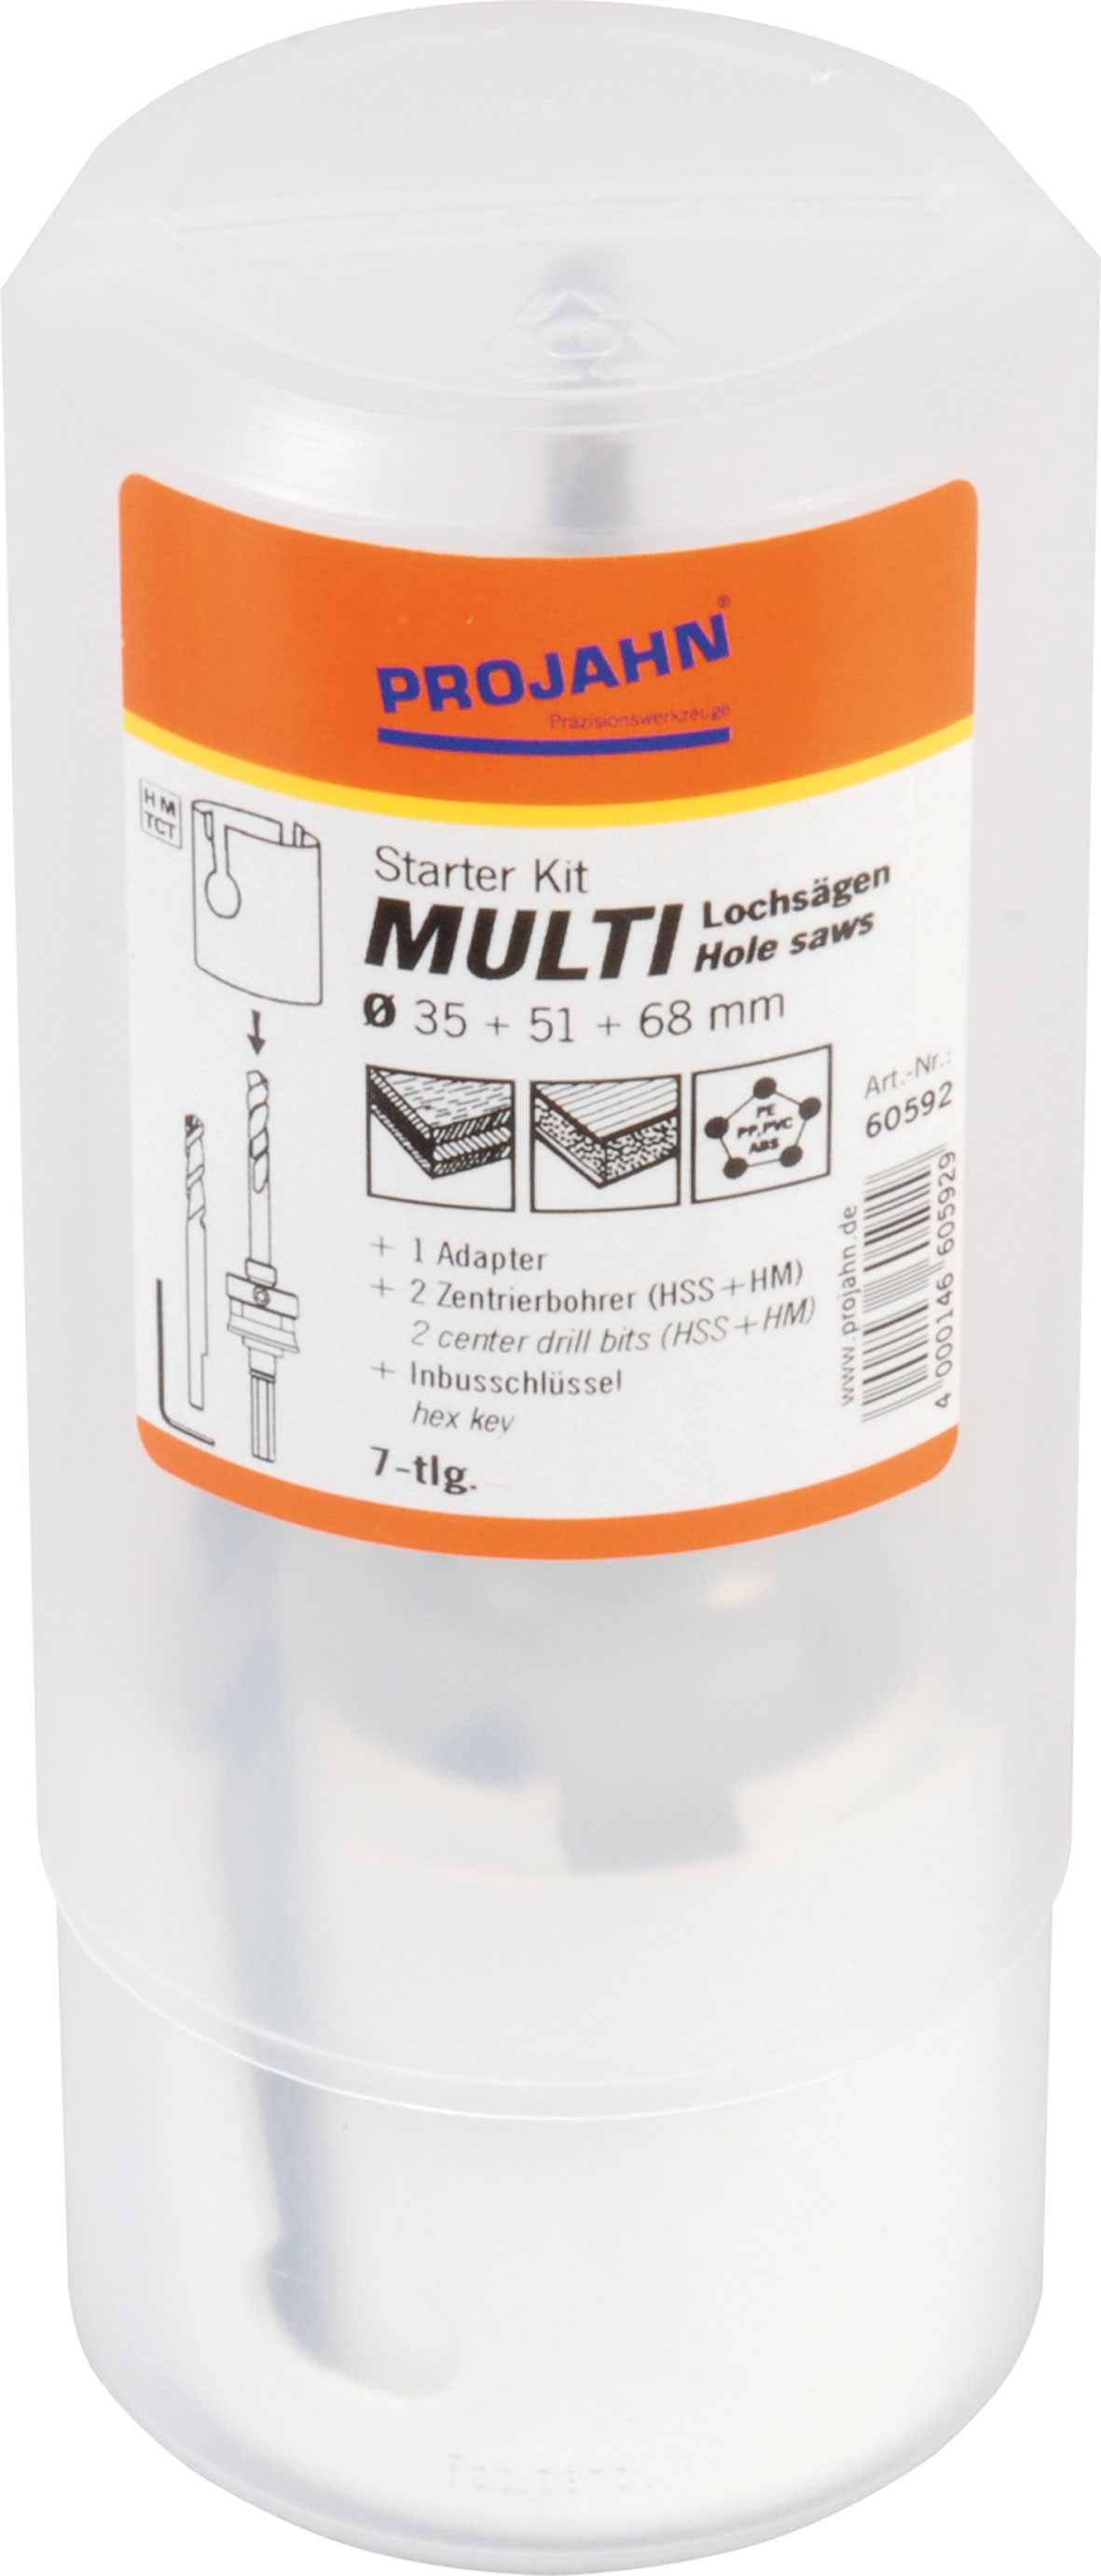 Hole saw kit MULTI carbide tipped "Starter-Kit" 7 pcs.